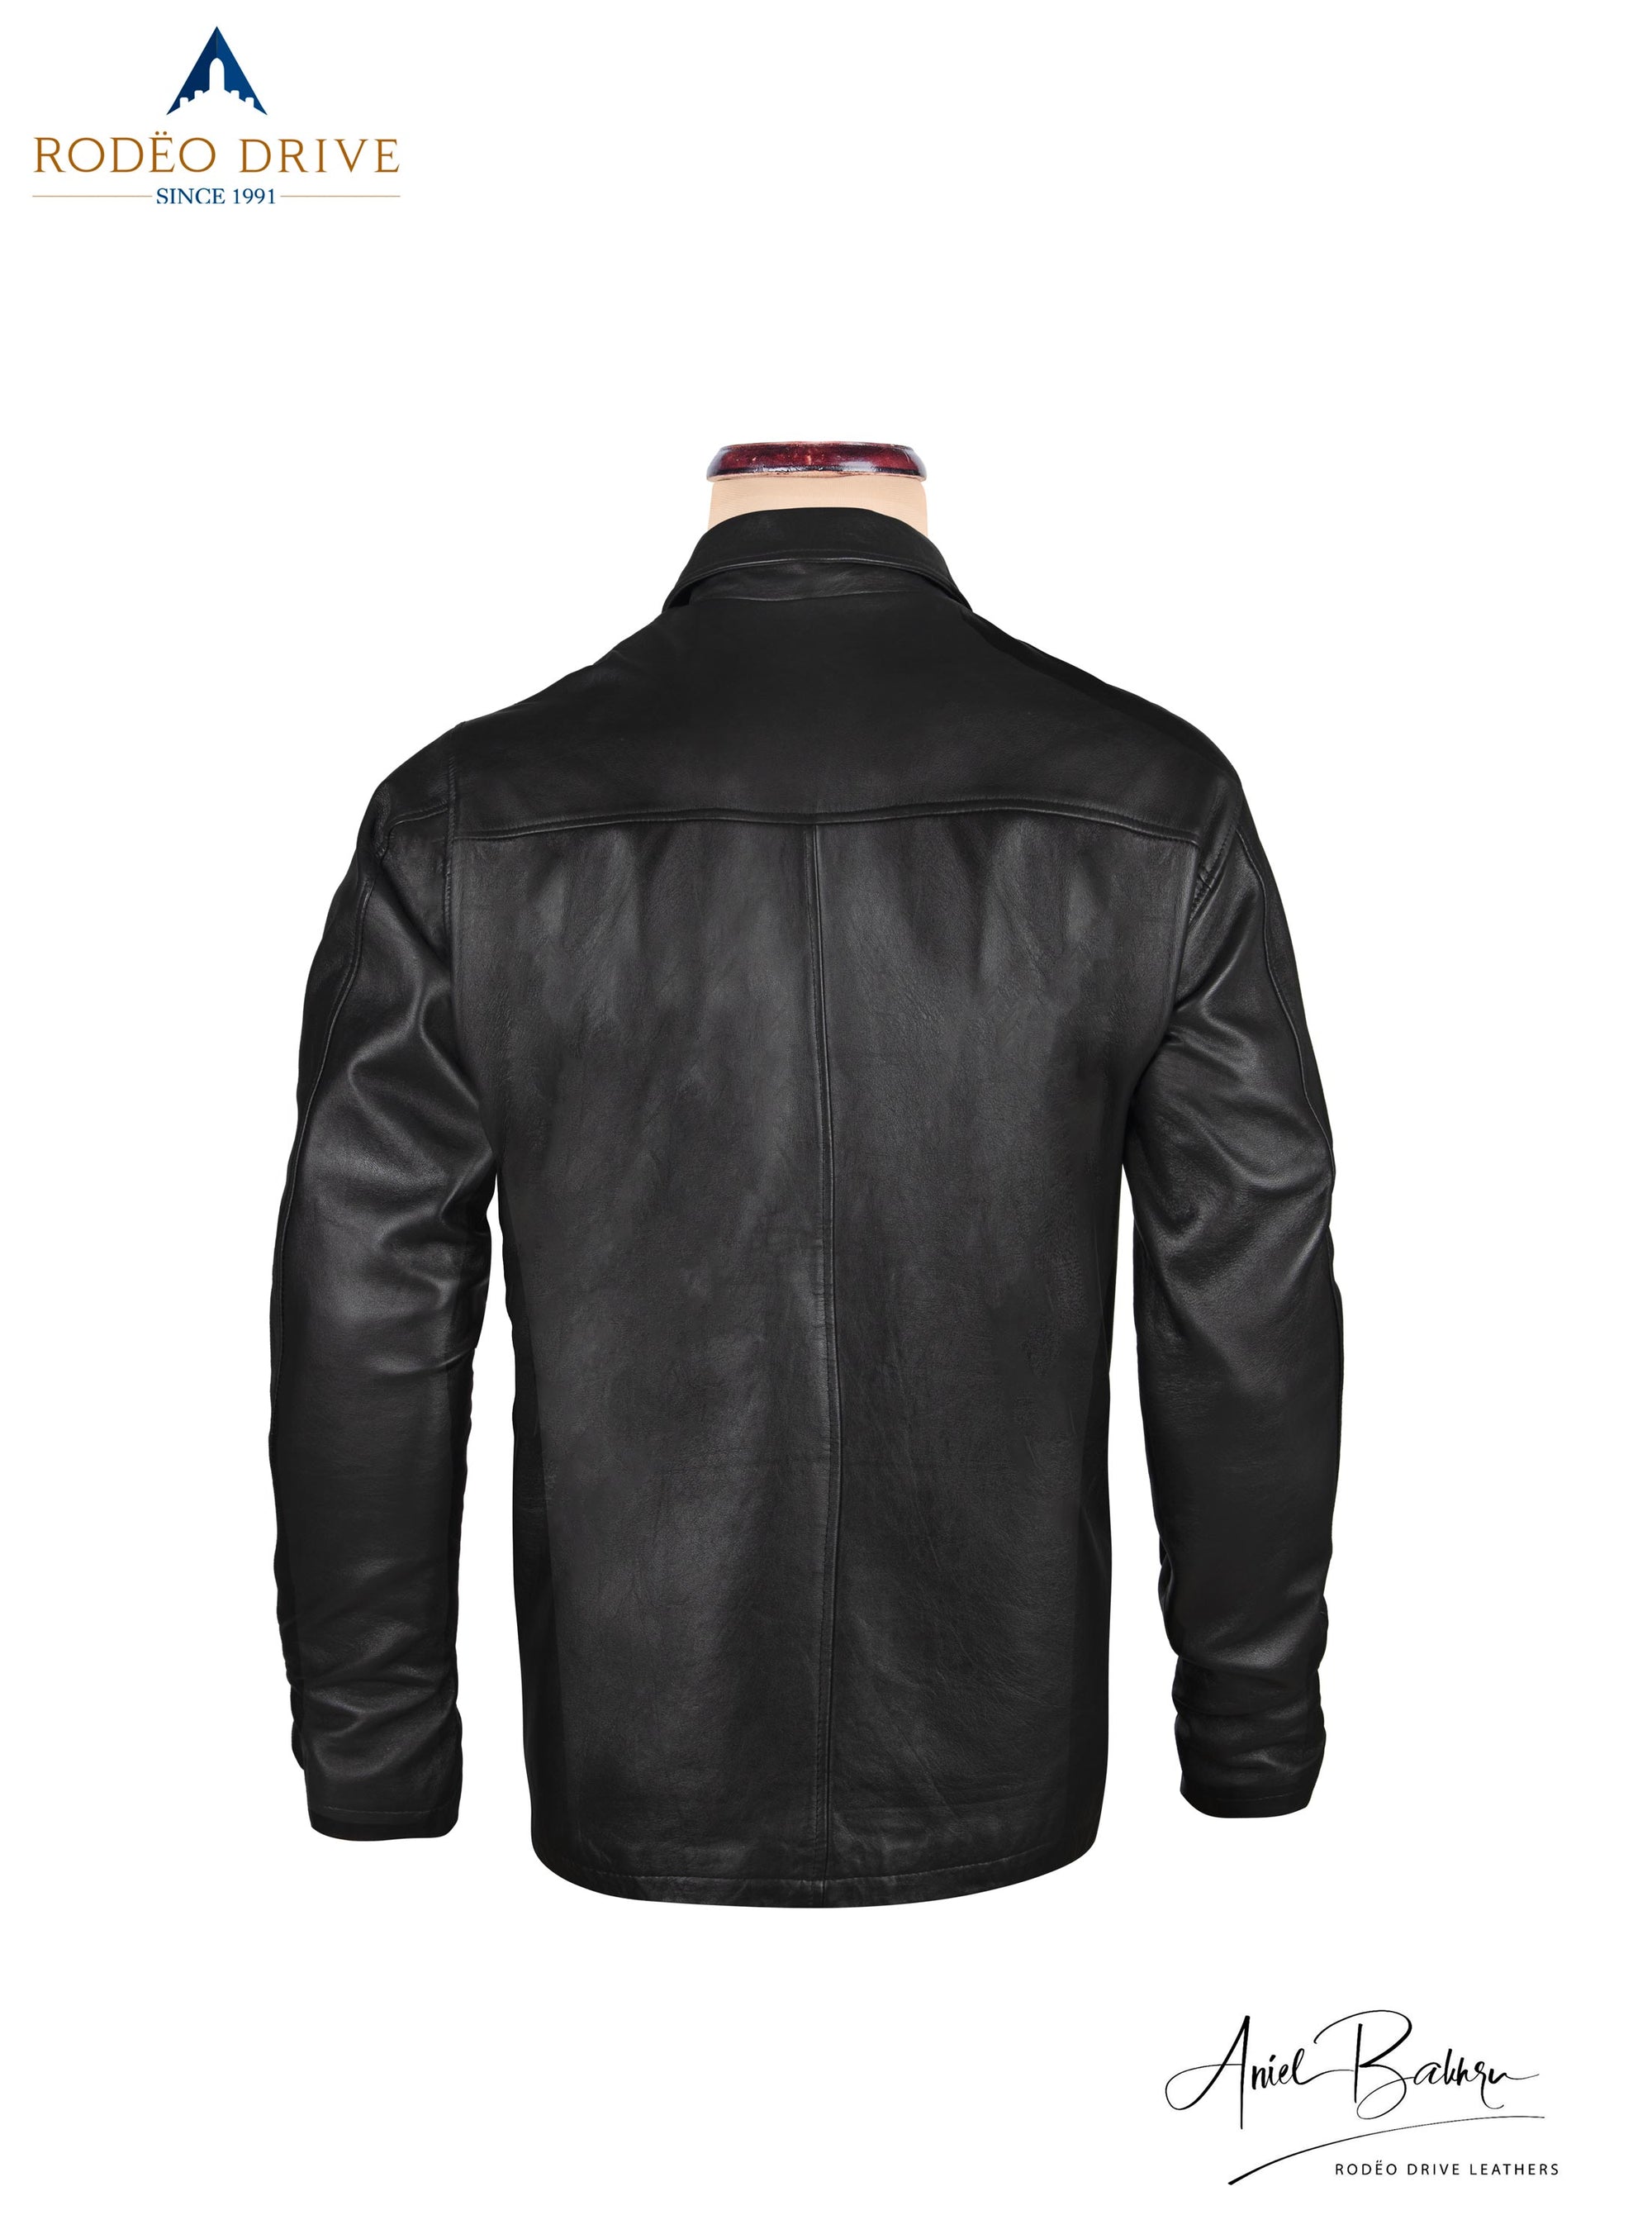 Back side image of black leather jacket. Displayed on mannequin.